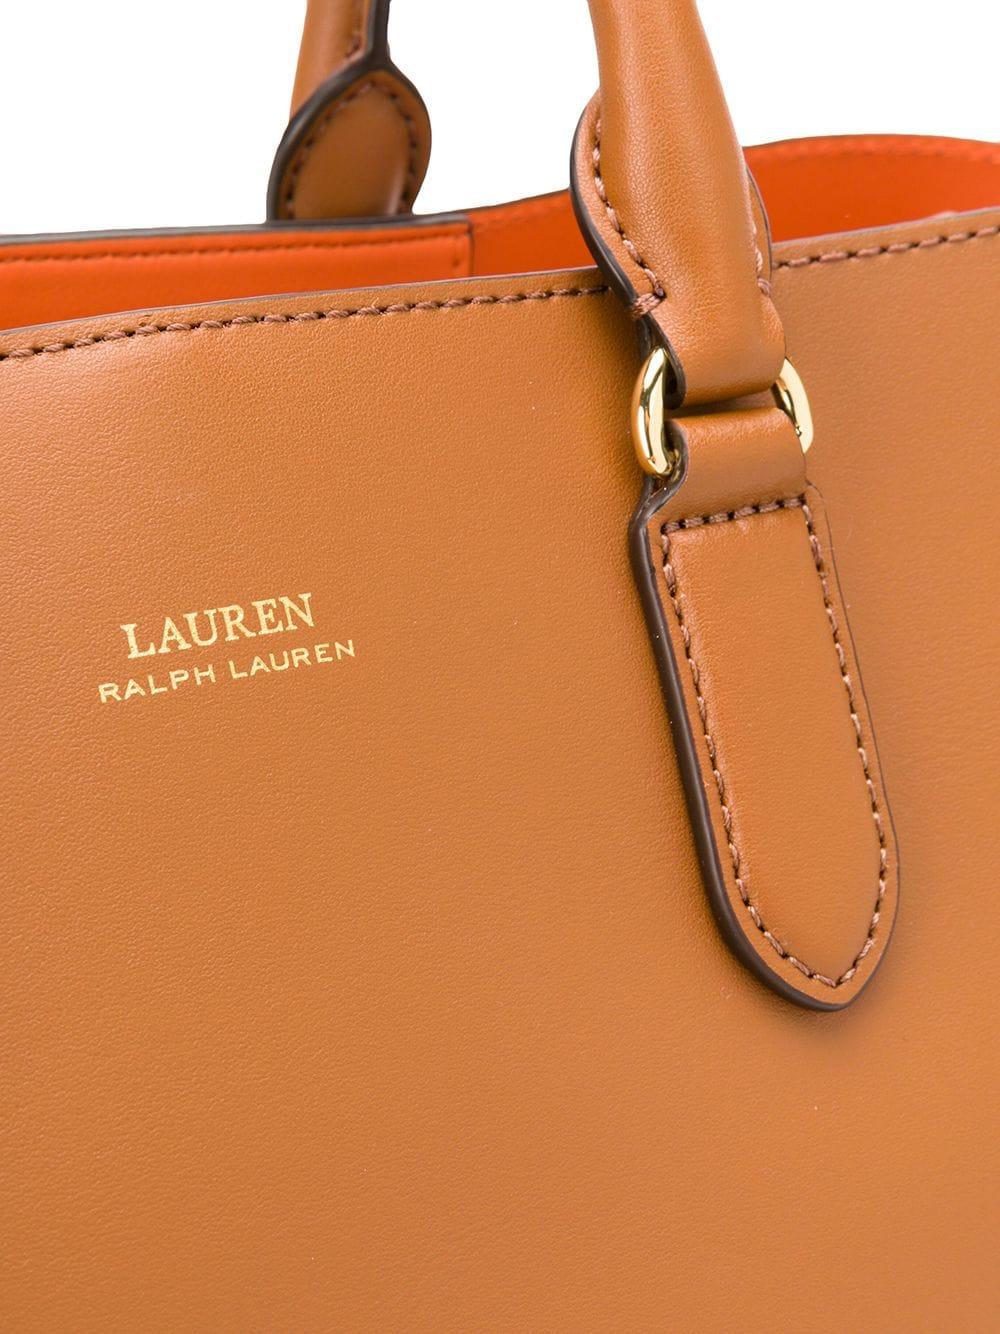 Lauren by Ralph Lauren Dryden Marcy Tote Bag in Brown | Lyst